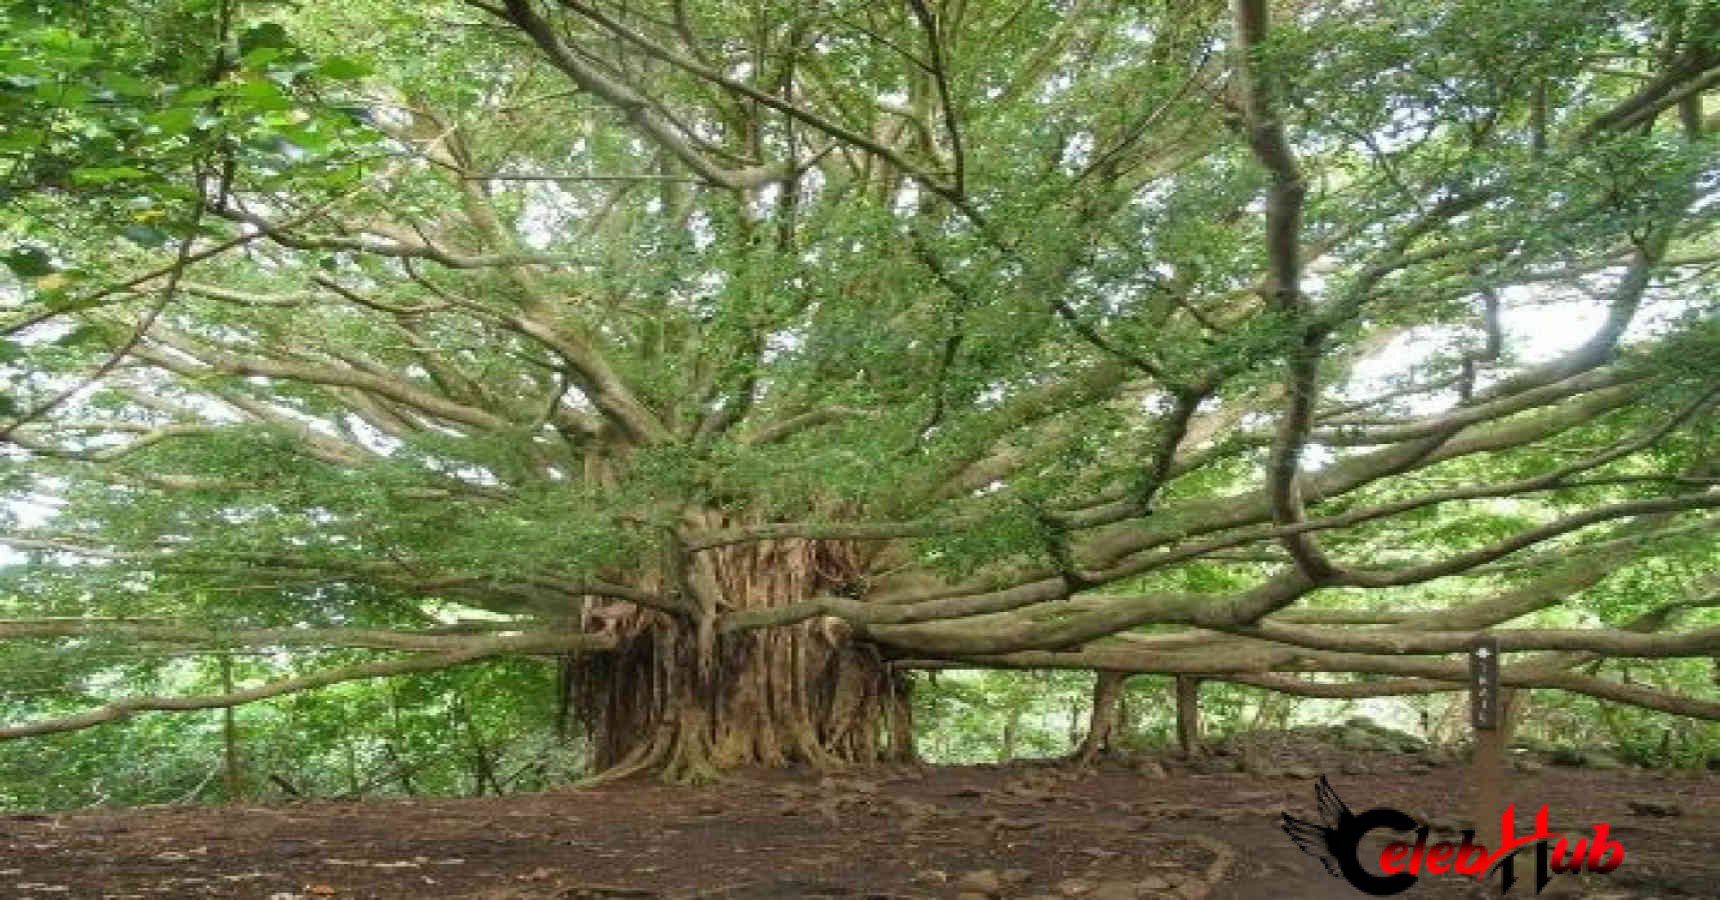 The great baniyan tree